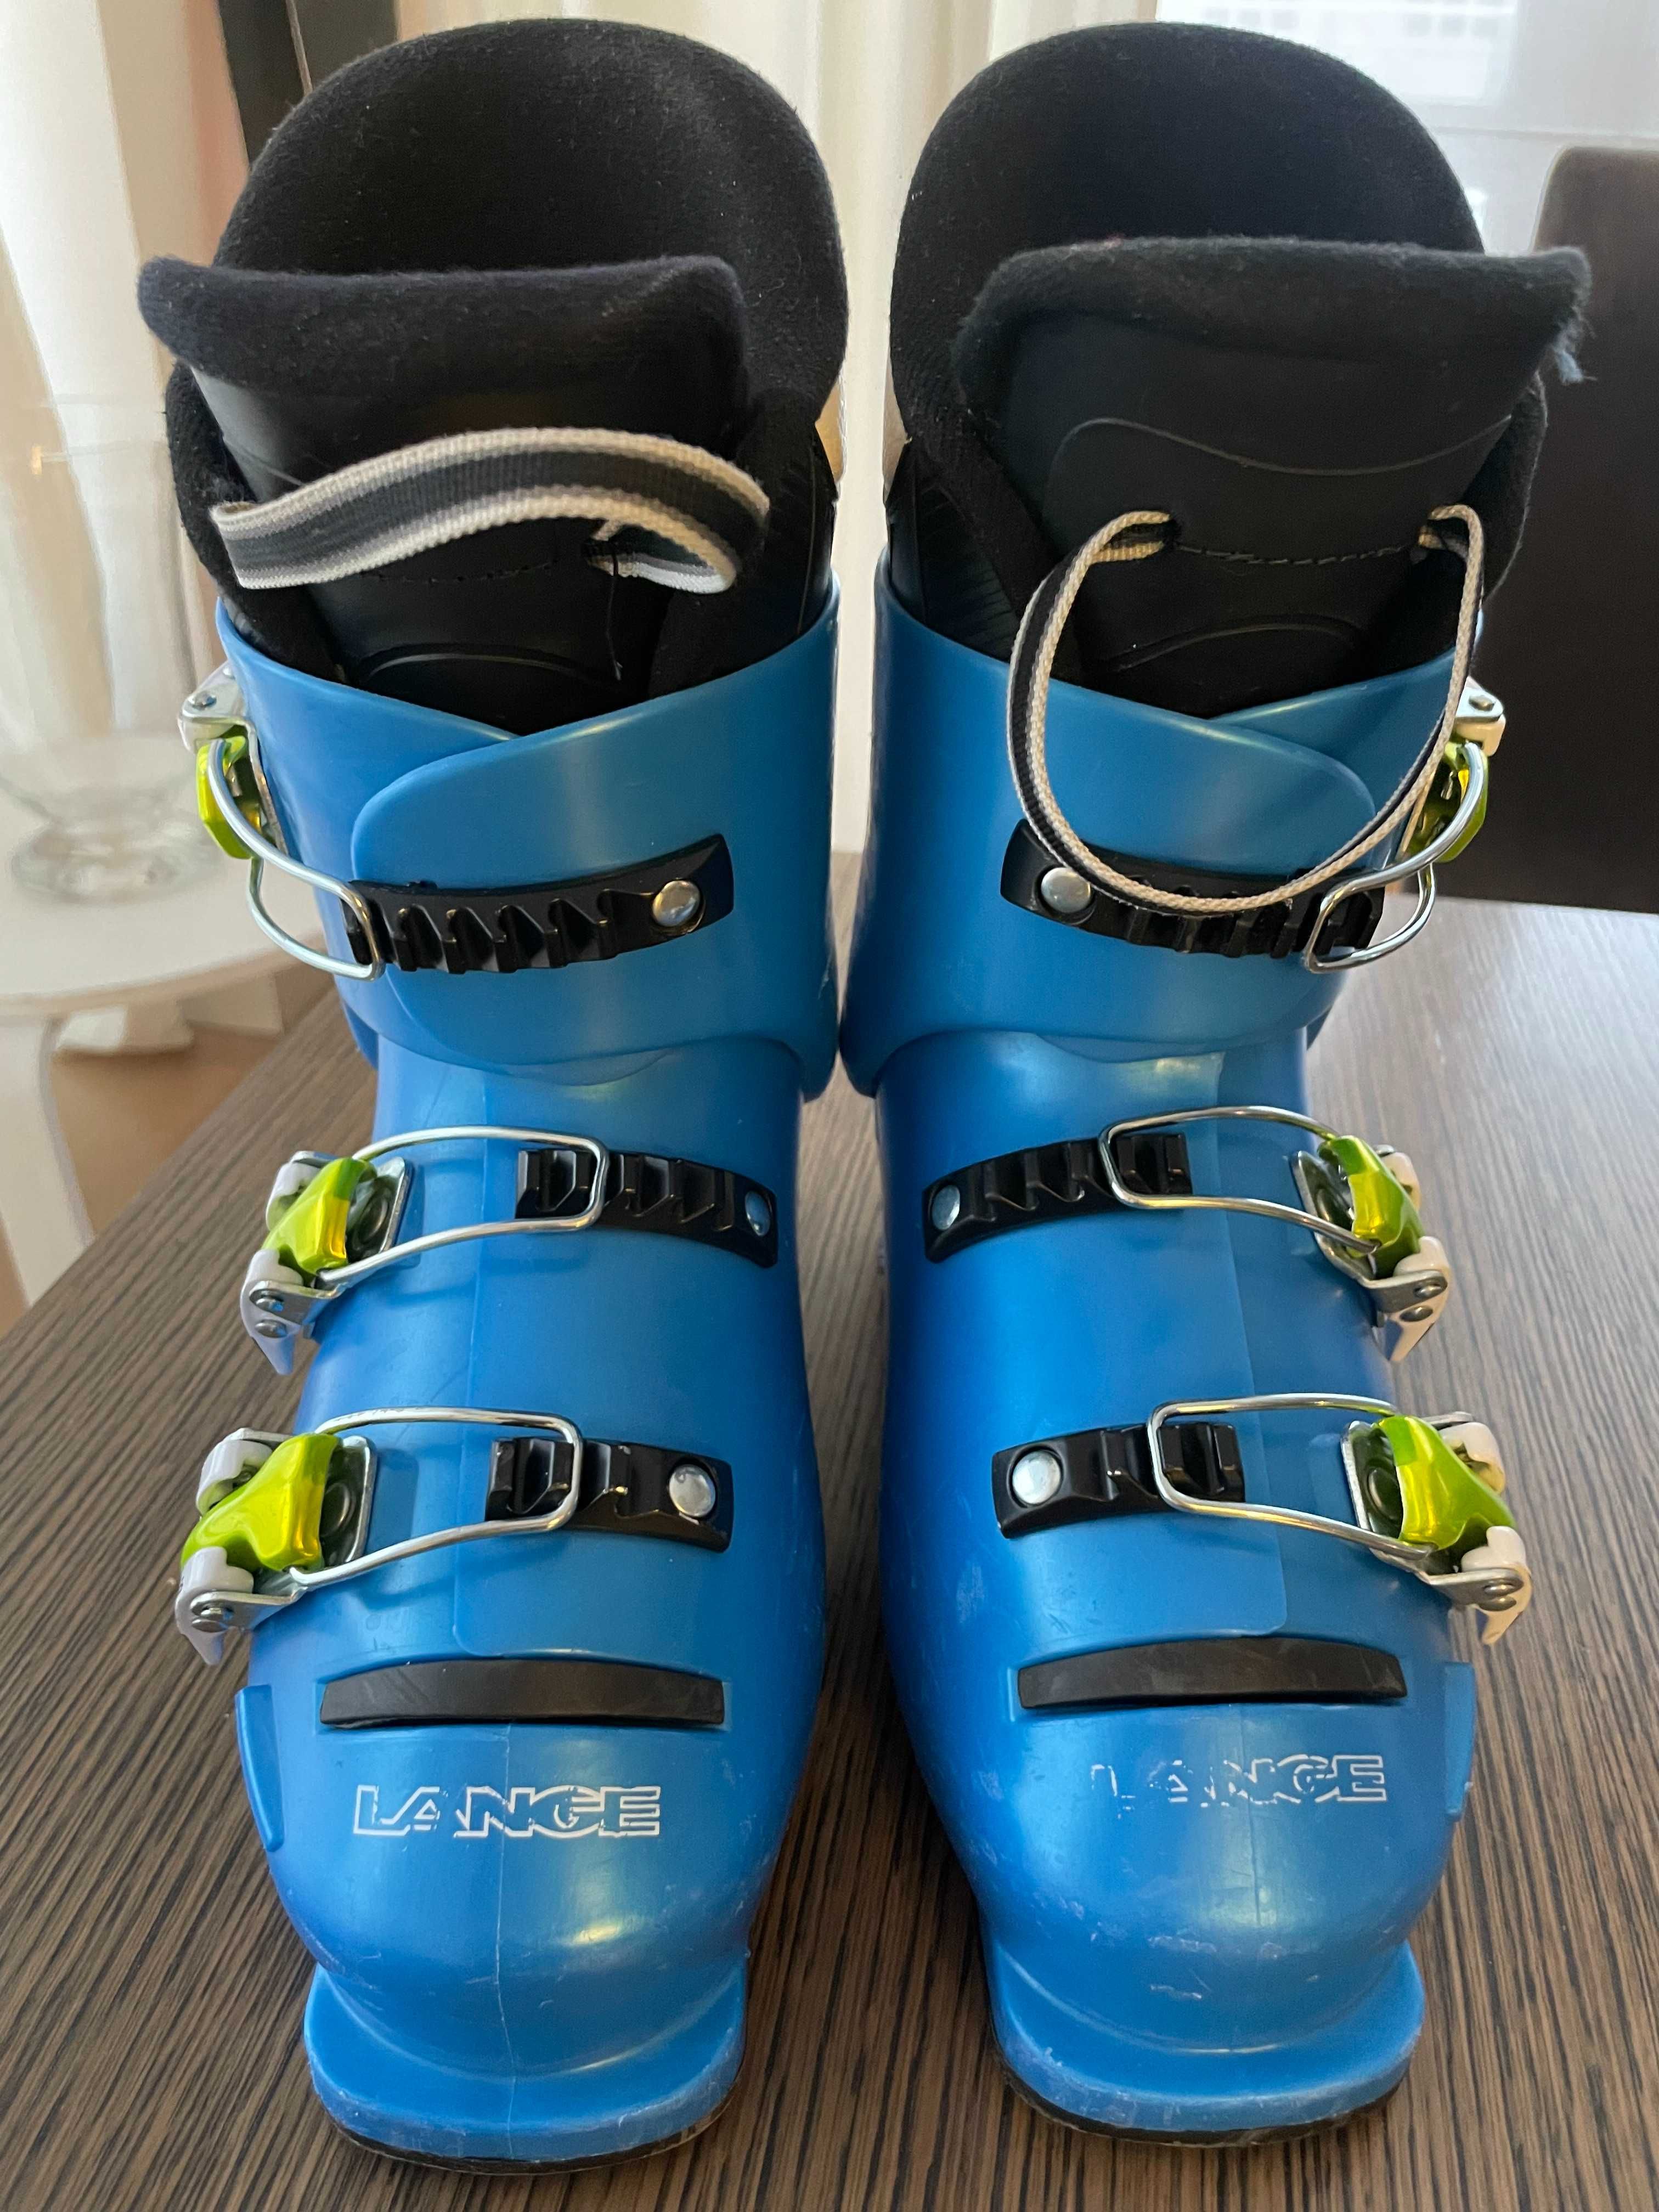 Buty narciarskie dziecięce LANGE RSJ50 (niebieskie), rozmiar 20,5